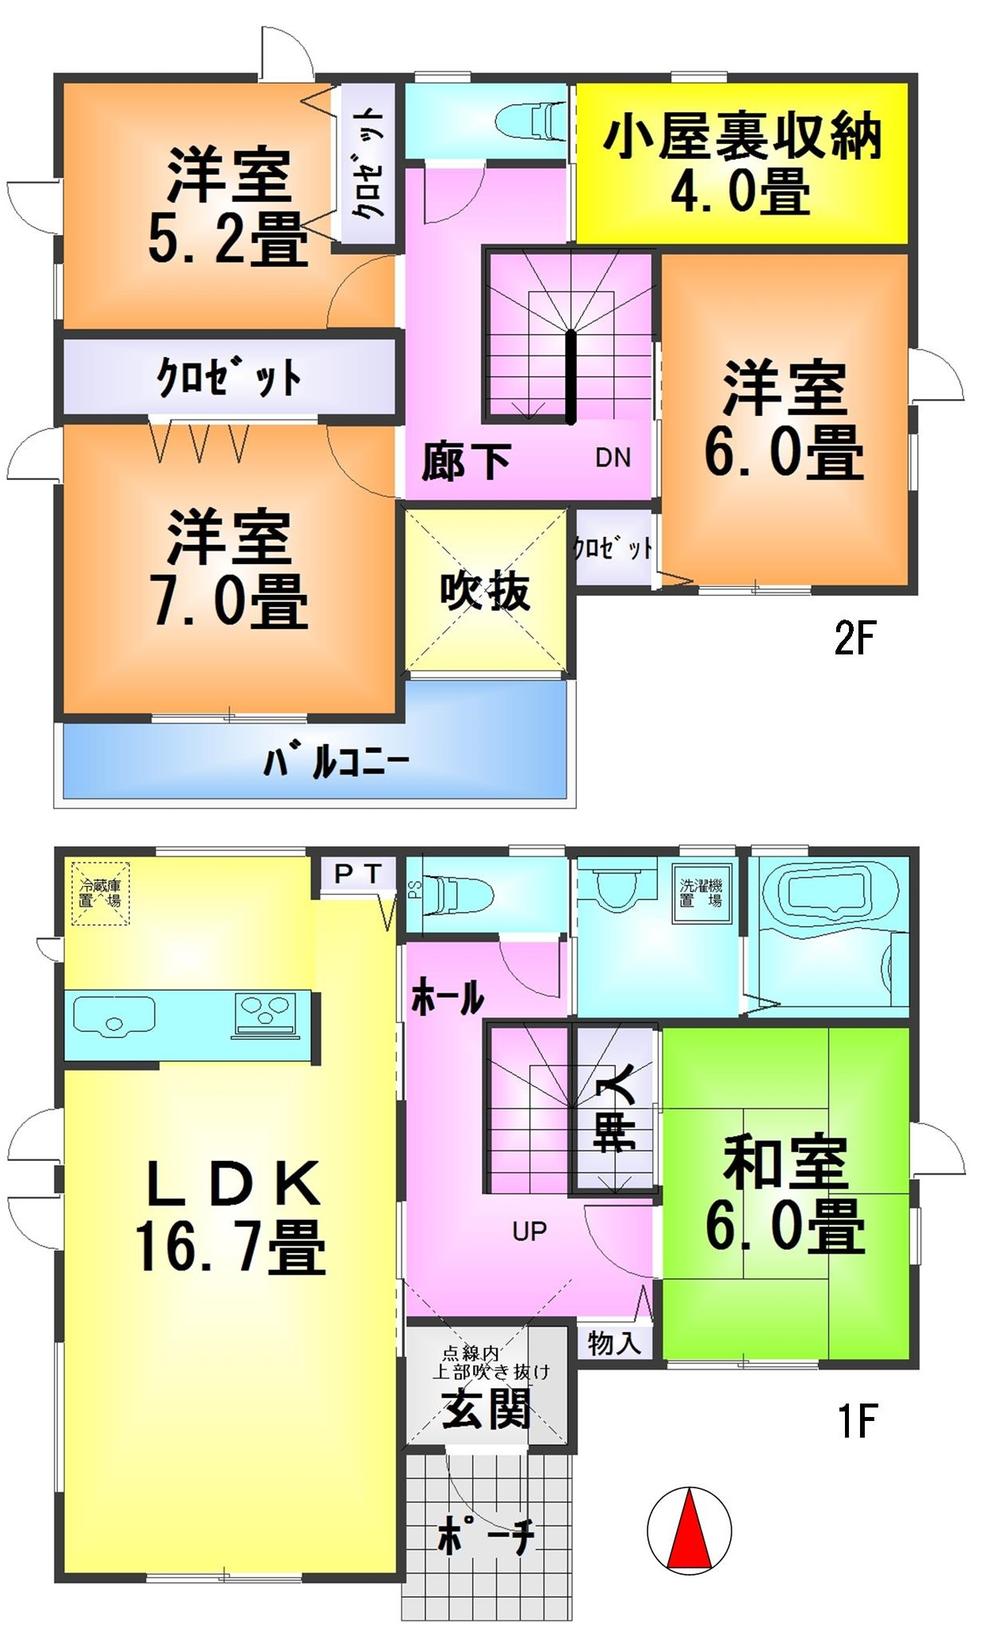 Floor plan. 31,800,000 yen, 4LDK + S (storeroom), Land area 132.3 sq m , Building area 104.33 sq m floor plan